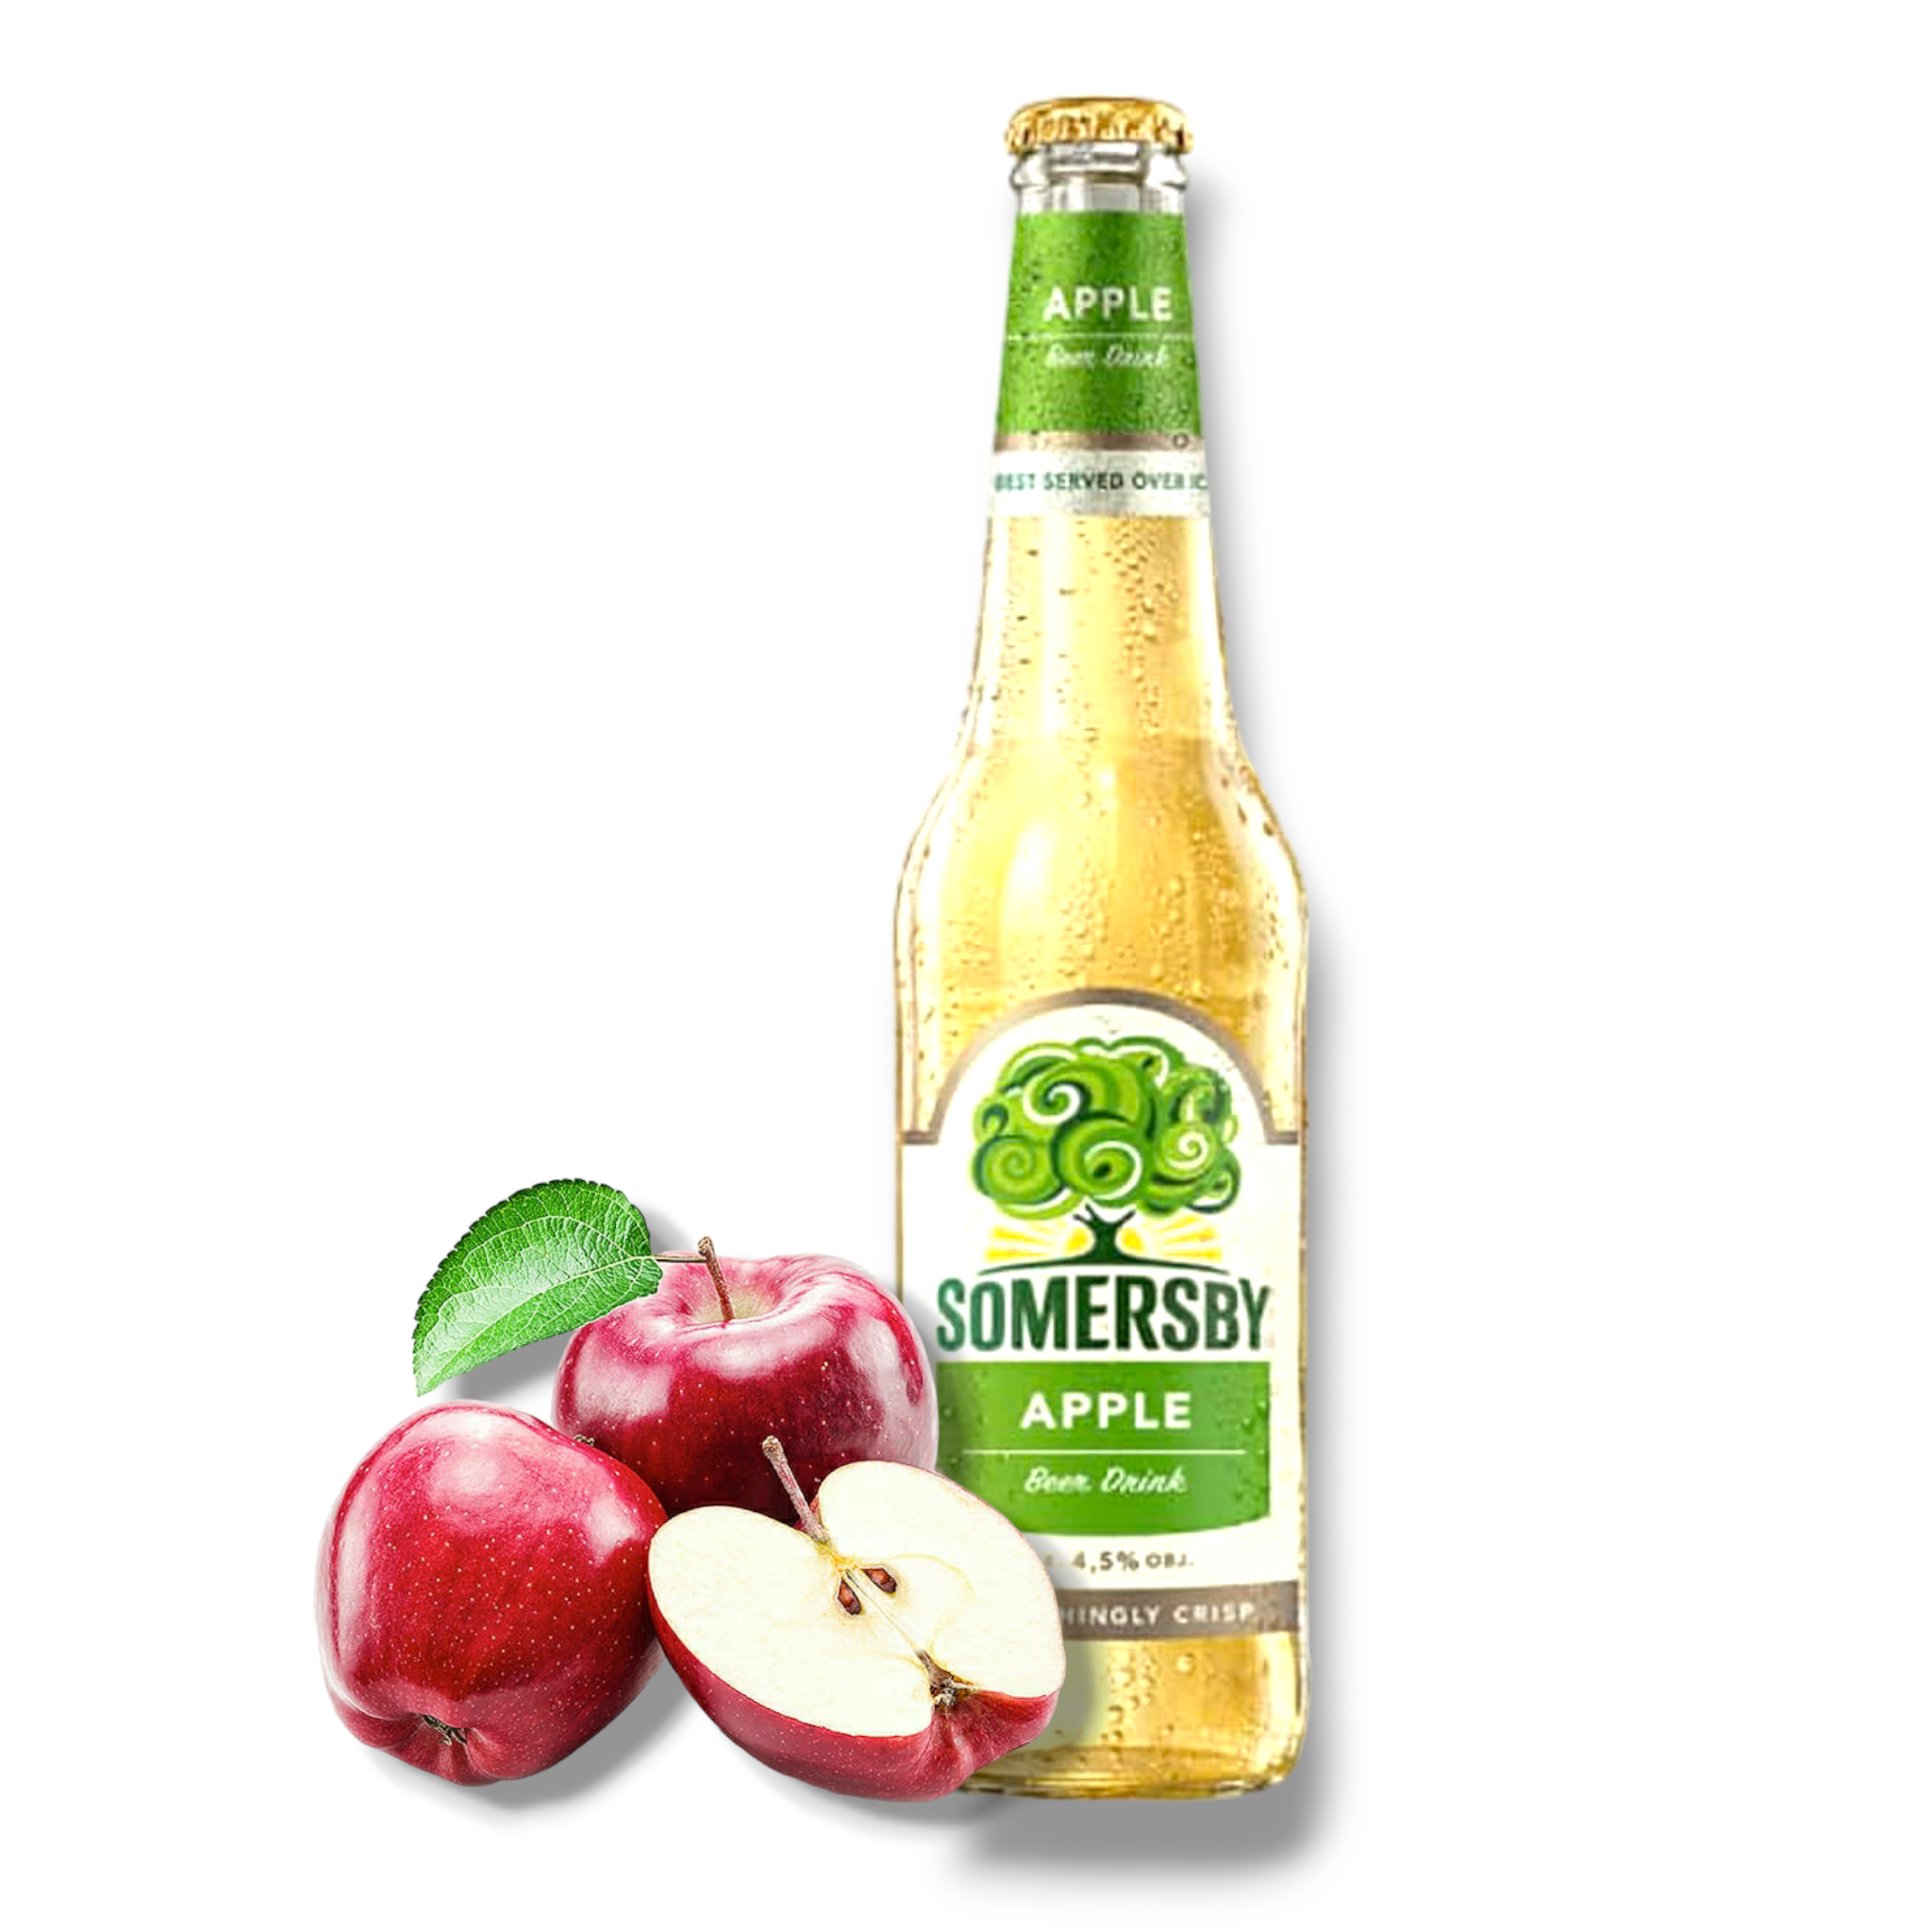 Somersby Apple 0,4l mit 4,5% Vol. - Biermischgetränk mit Apfel